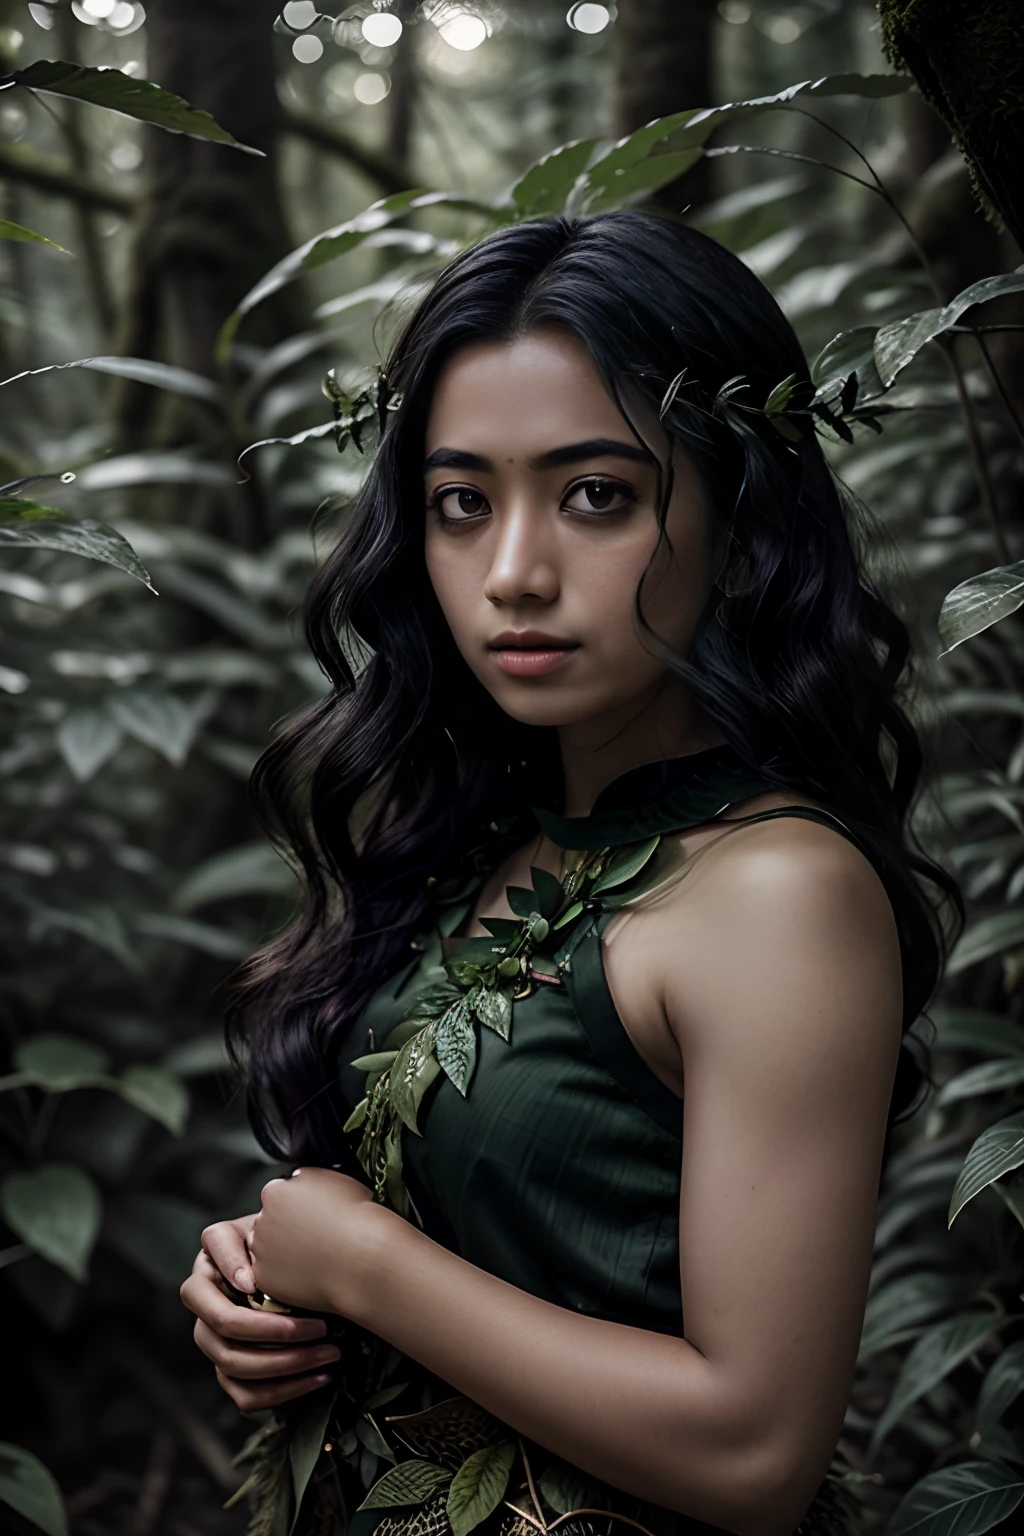 Portrait in лес, листья в стиле матери-природы, волосы из зеленых листьев, сказочный, молодая чернокожая женщина,индонезийский, UHD, лес goddess, сказочный, темно-зеленая одежда, лес, падающие листья, частицы, Лучшее качество, поза, верхняя часть тела, смотрю на зрителя, с тетроиллюминацией, ободной свет, красивые произведения искусства, идеальная композиция